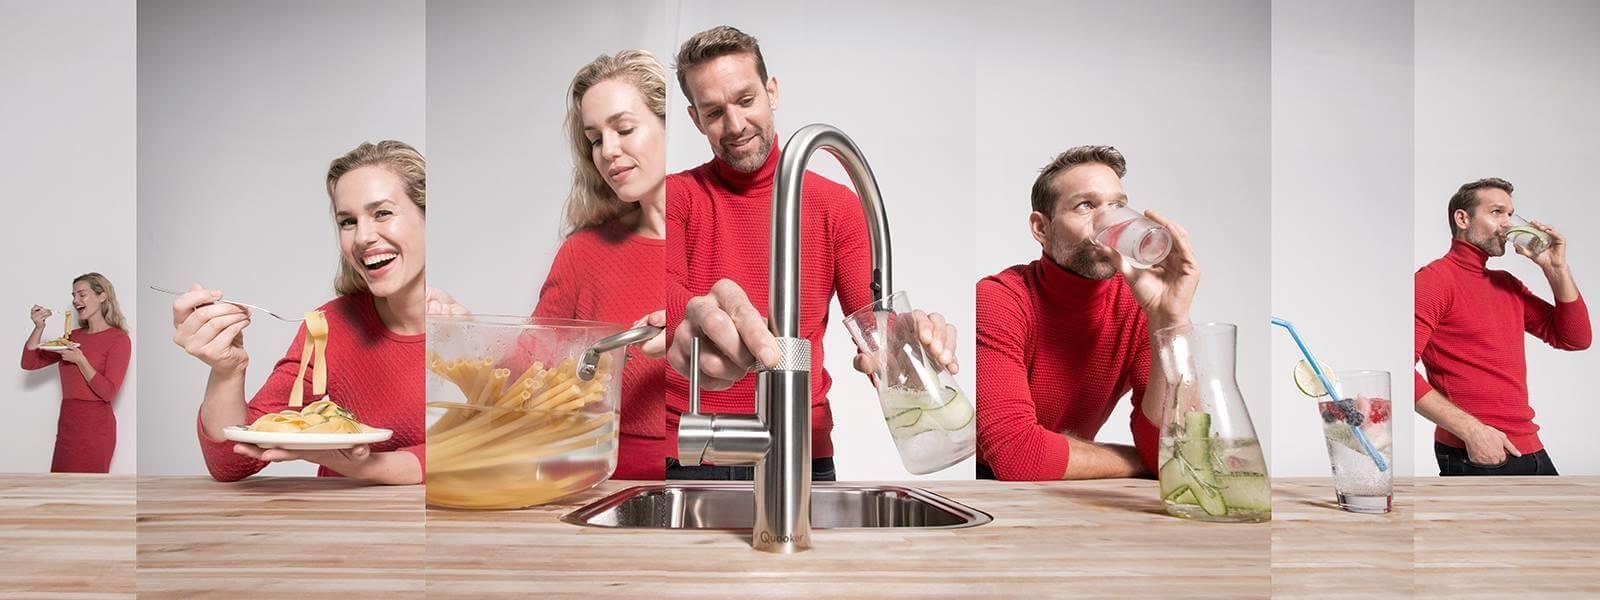 Zusammenschnitt von Bildern mit Mann und Frau bei Benutzung der Küchenarmaturen